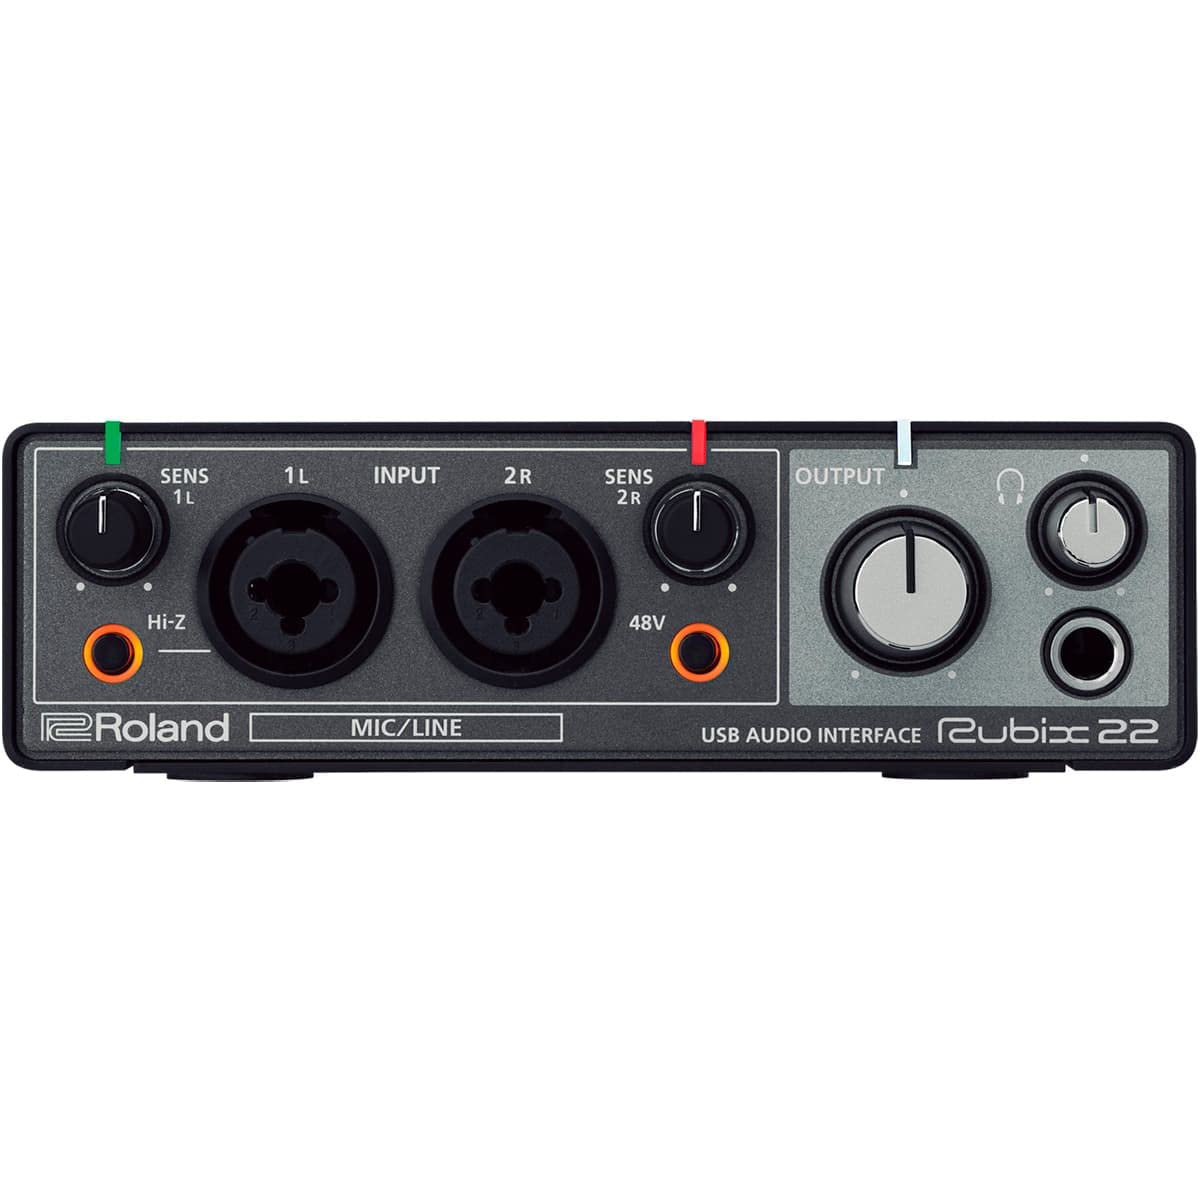 bon prix Interface audio USB RUBIX22 Roland, interface haute résolution 2 entrées + 2 sorties pour Mac, PC et iPad V6o93sUr6 à vendre